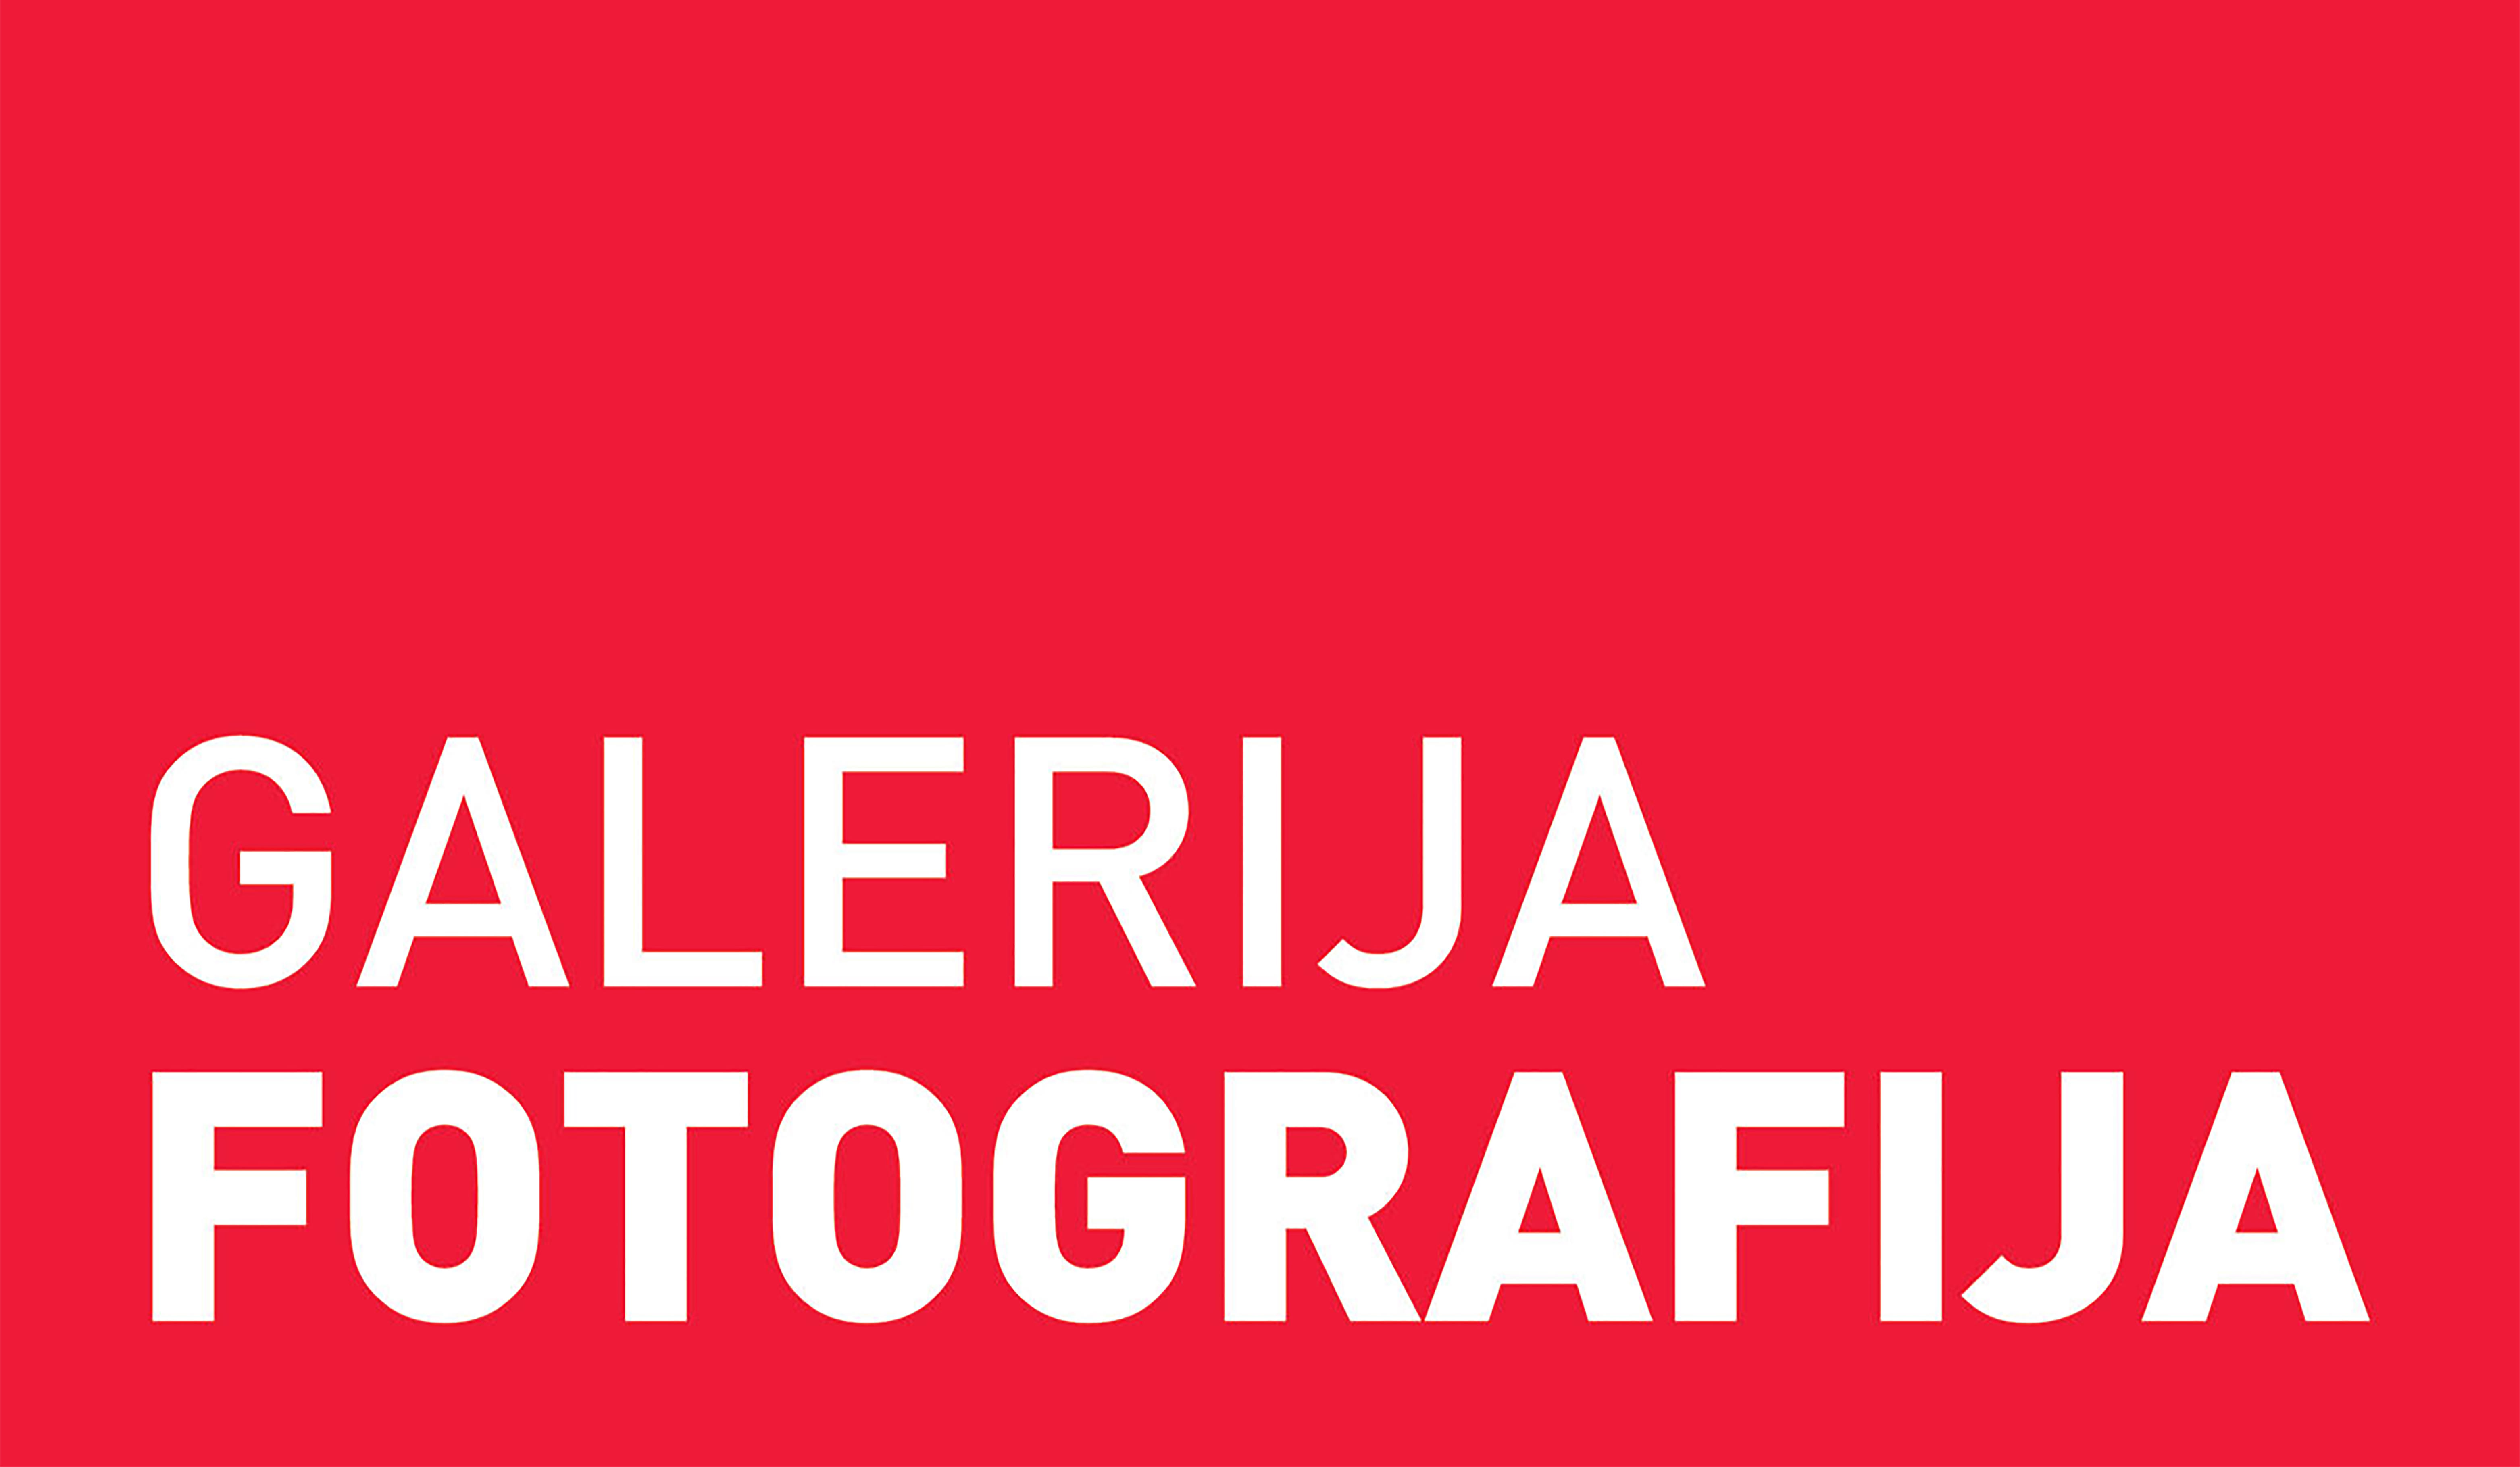 Galerija Fotografija company logo